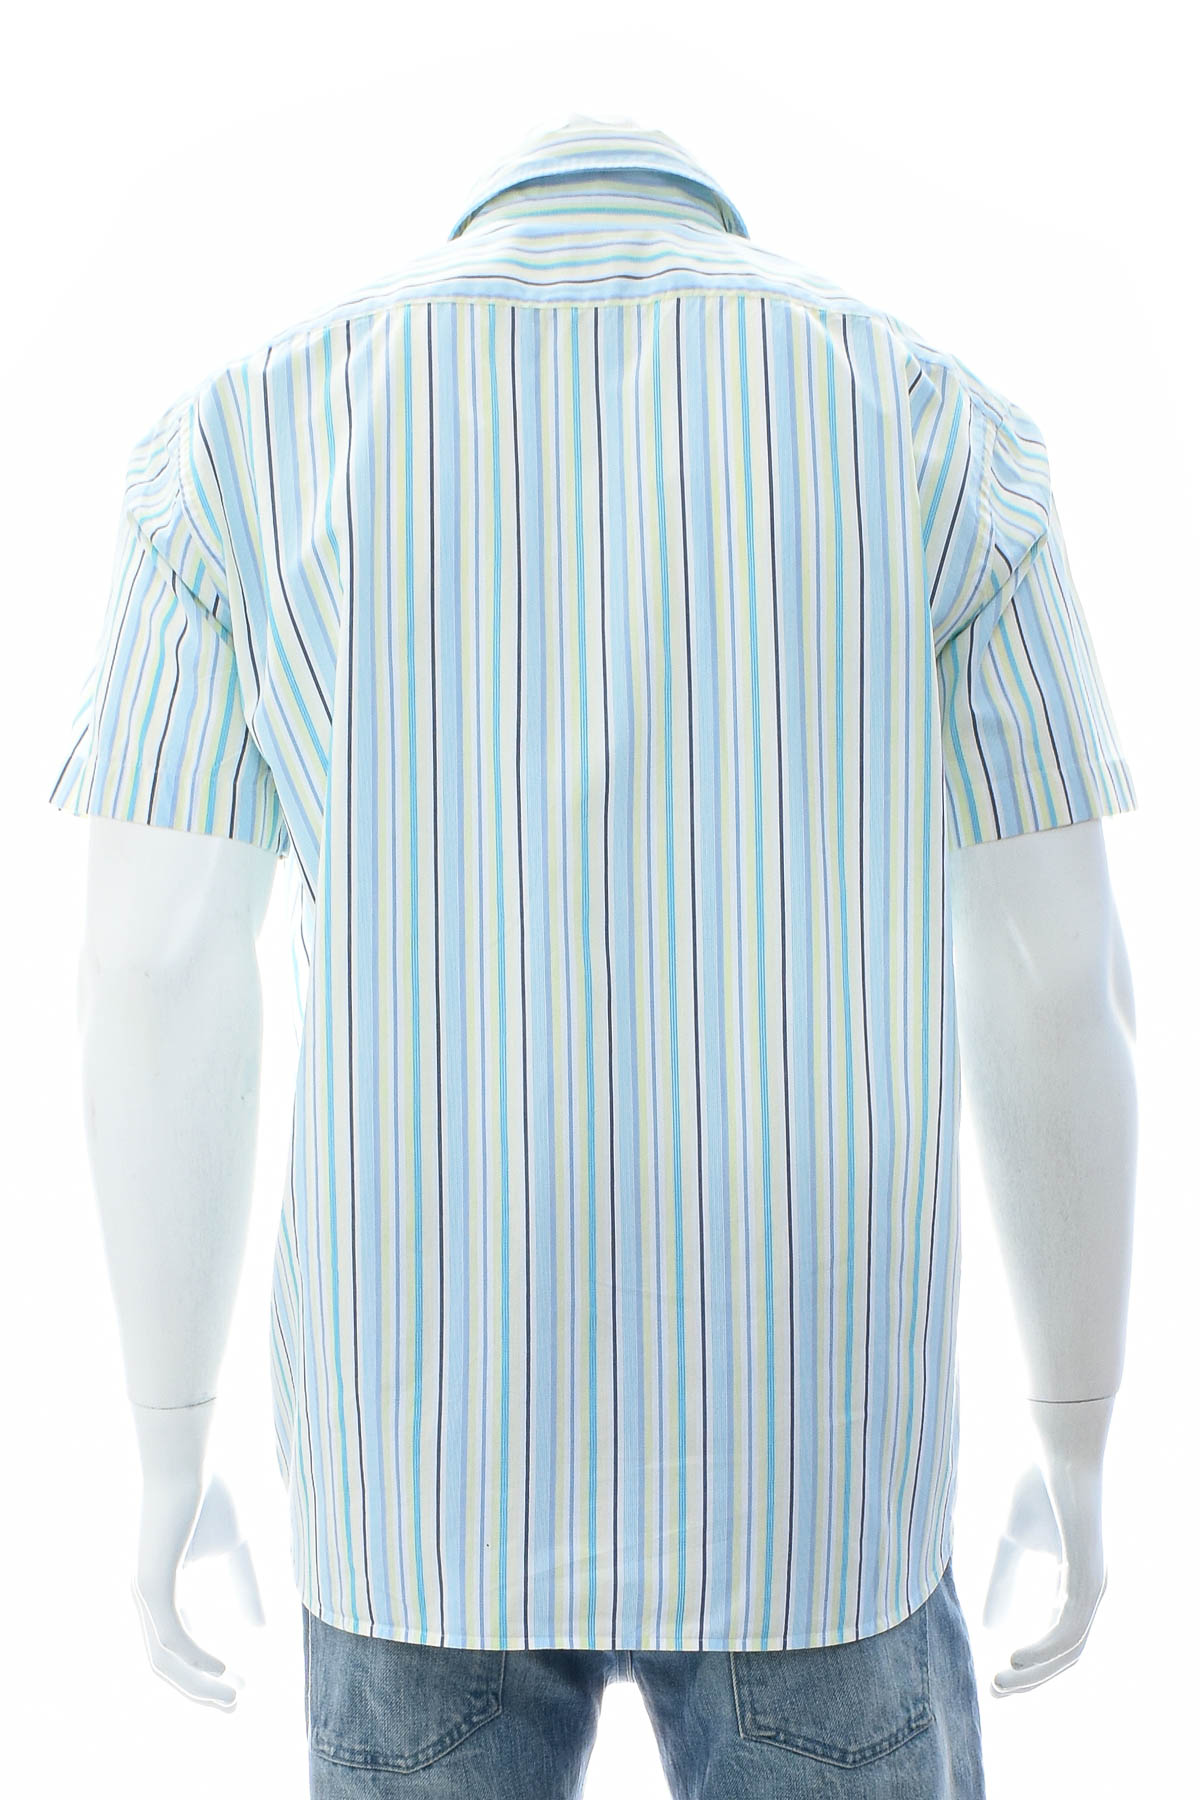 Ανδρικό πουκάμισο - HUGO BOSS - 1